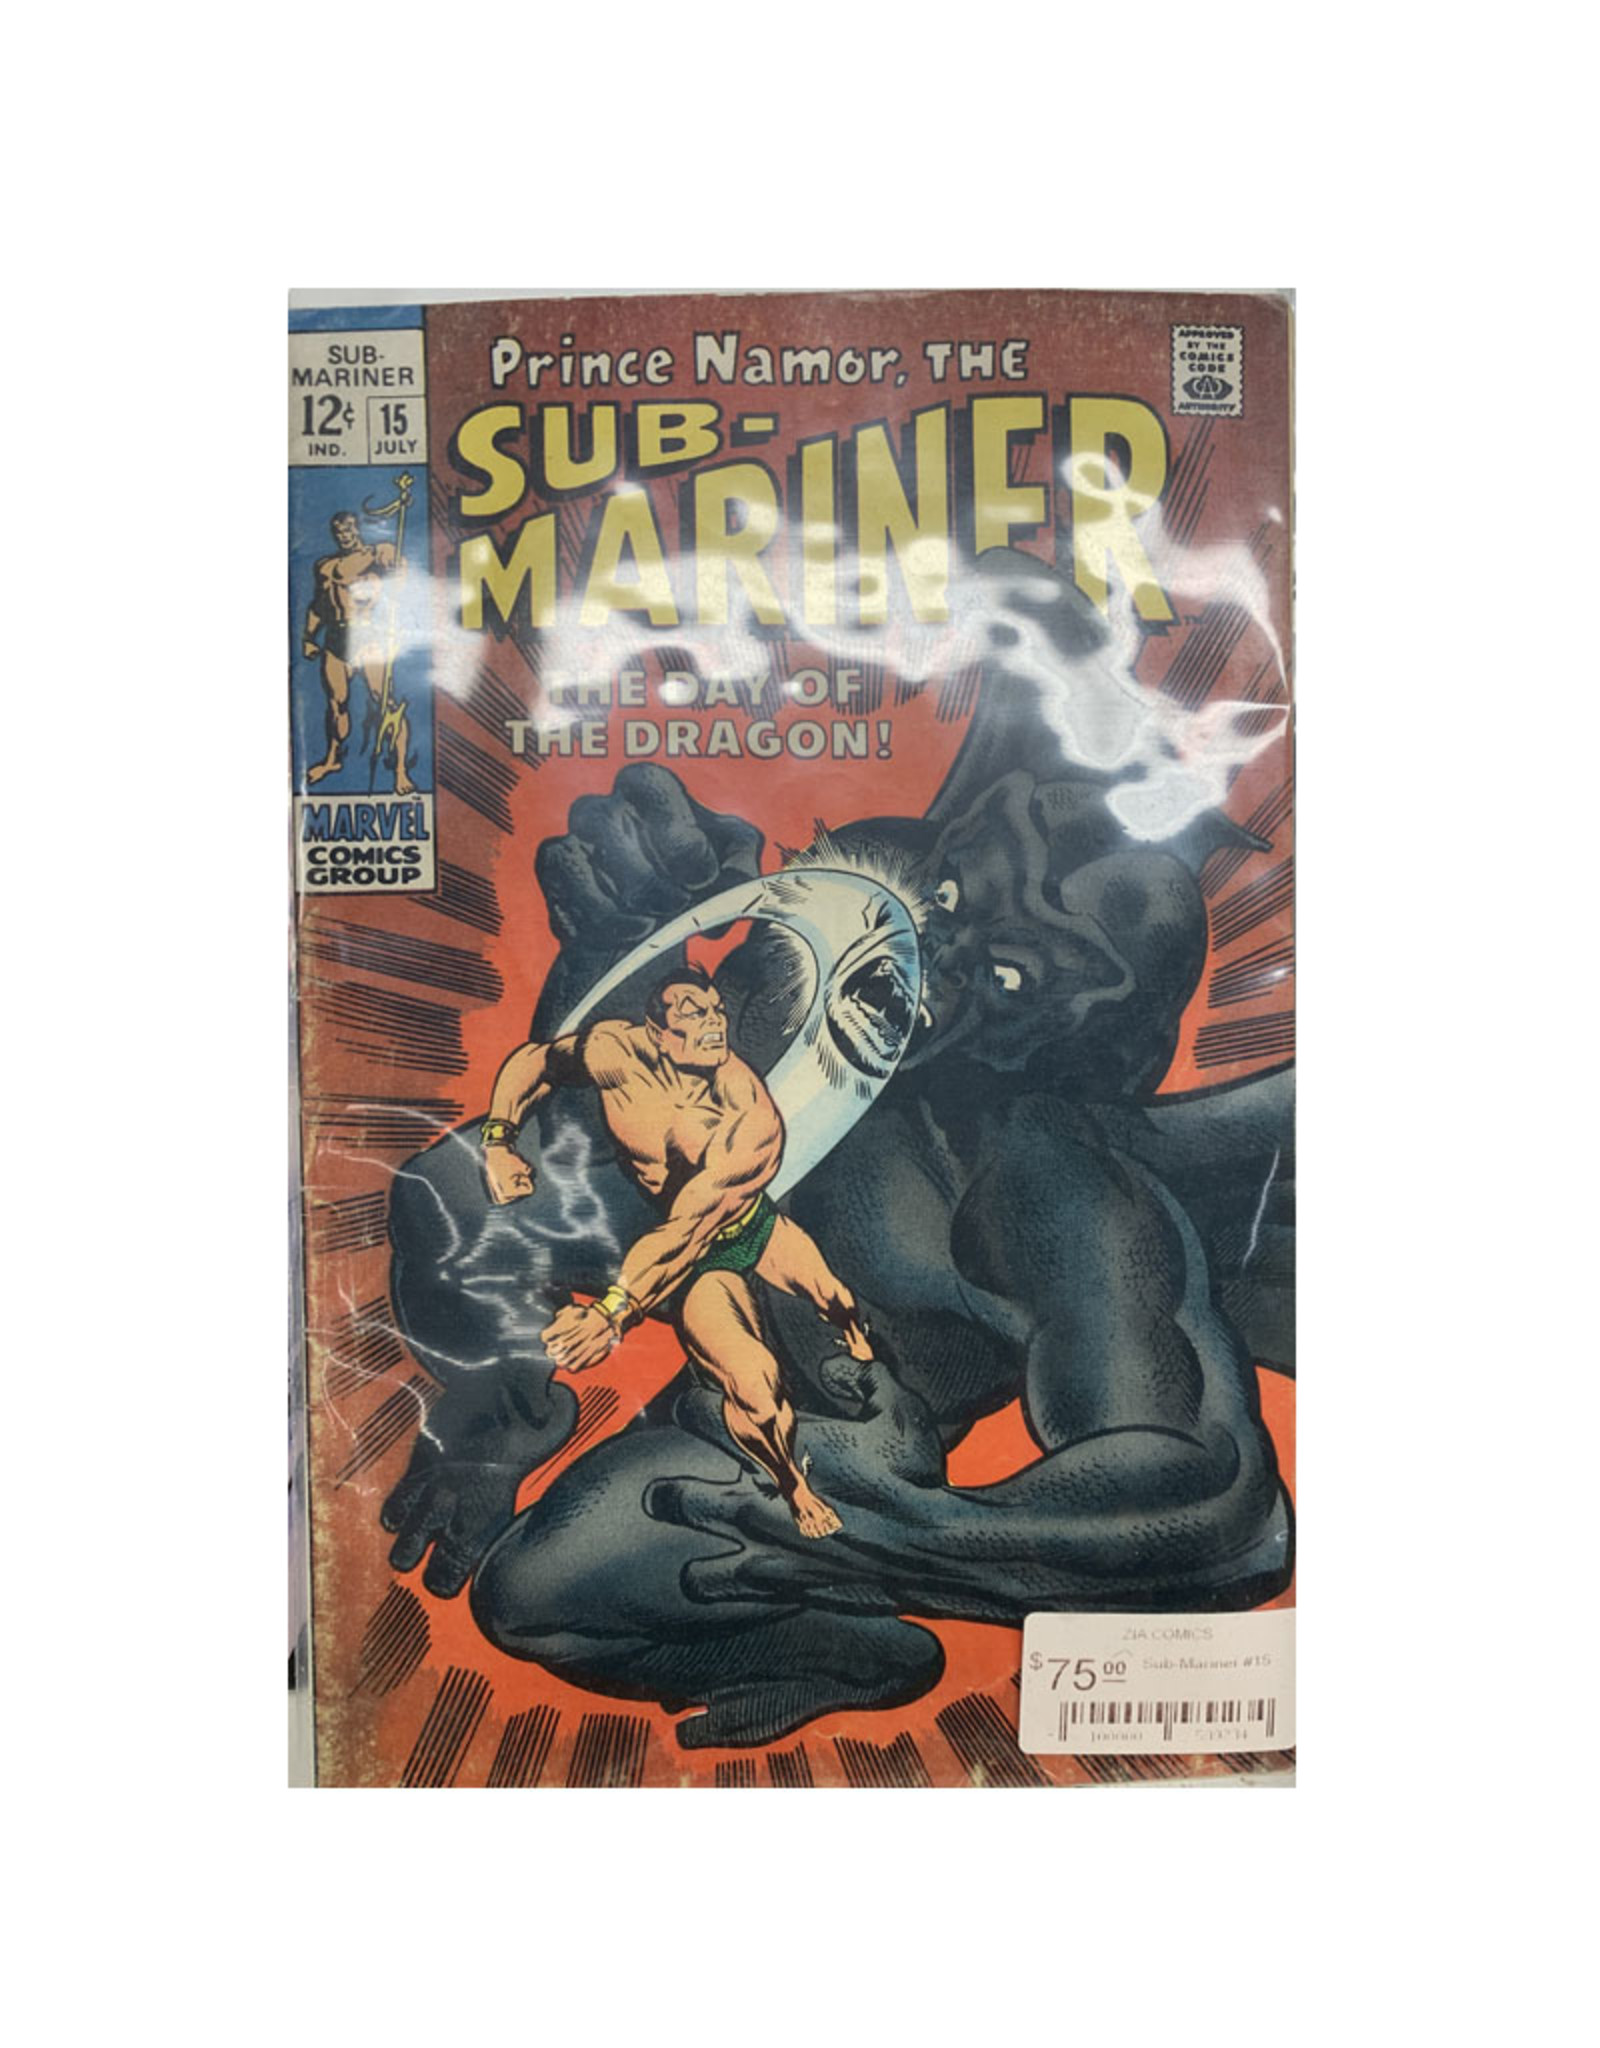 Marvel Comics Sub-Mariner #15